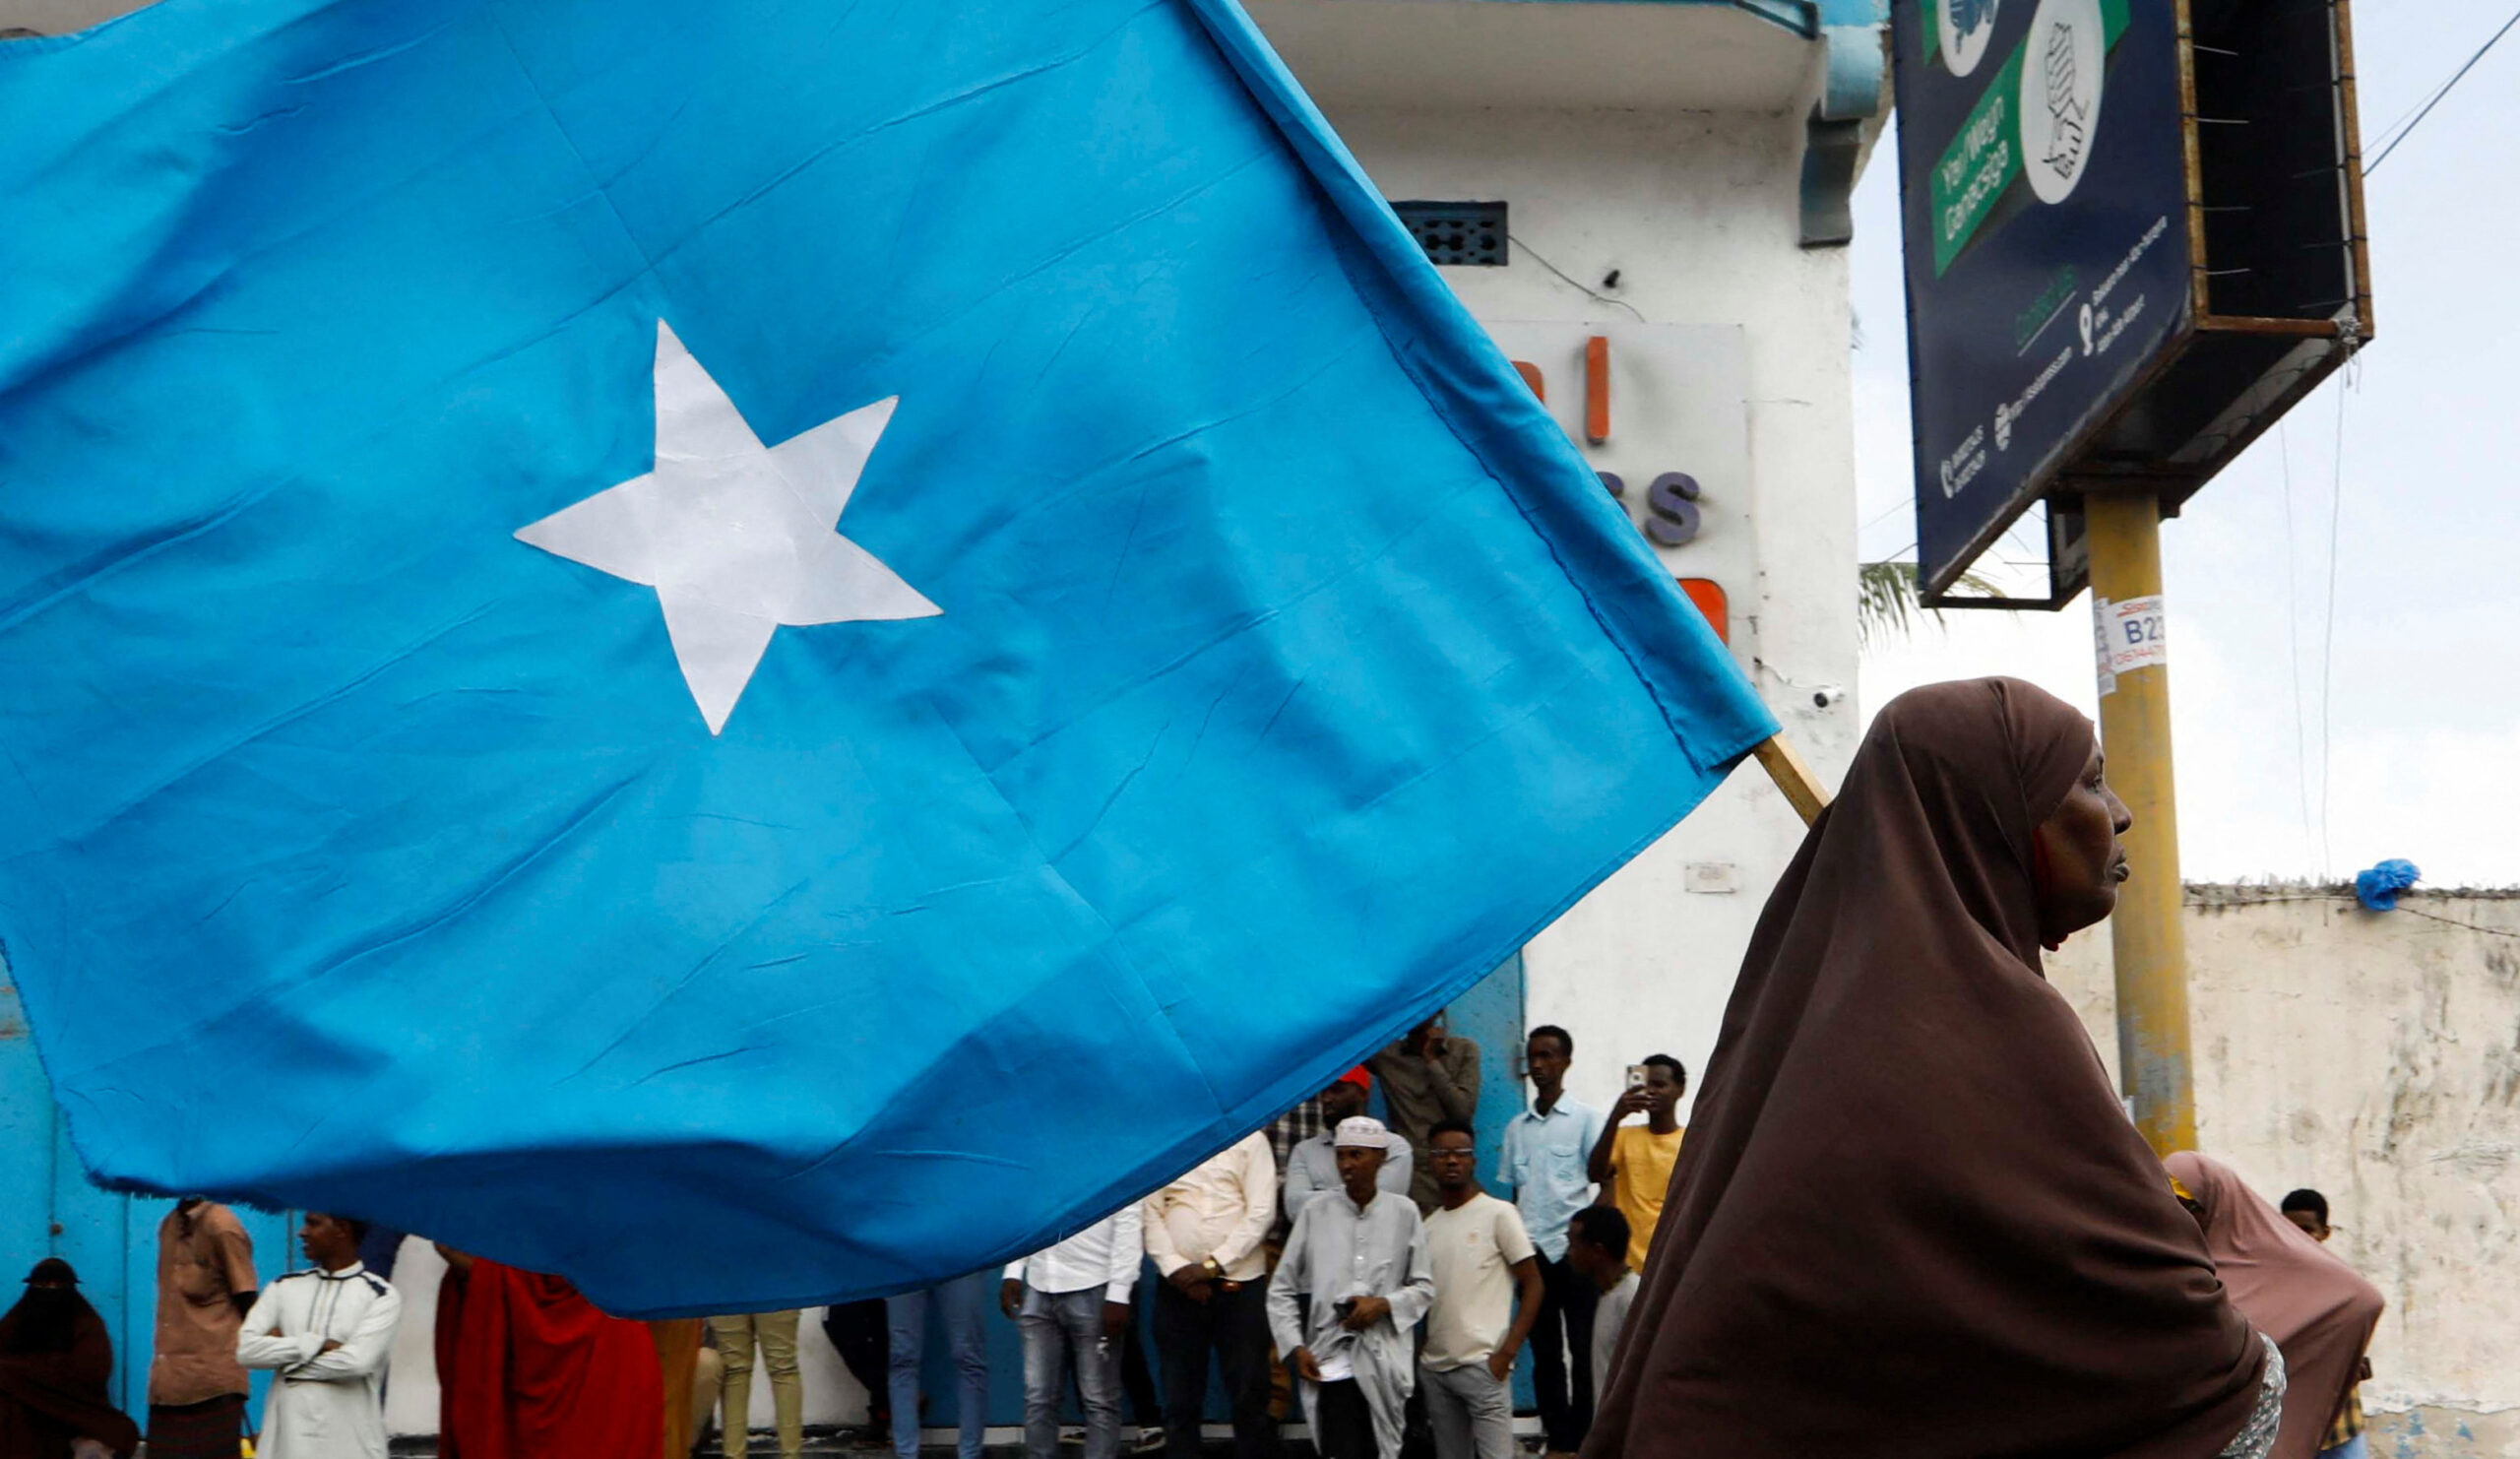 Over a port deal, Somalia recalls Ethiopia's ambassador, according to officials